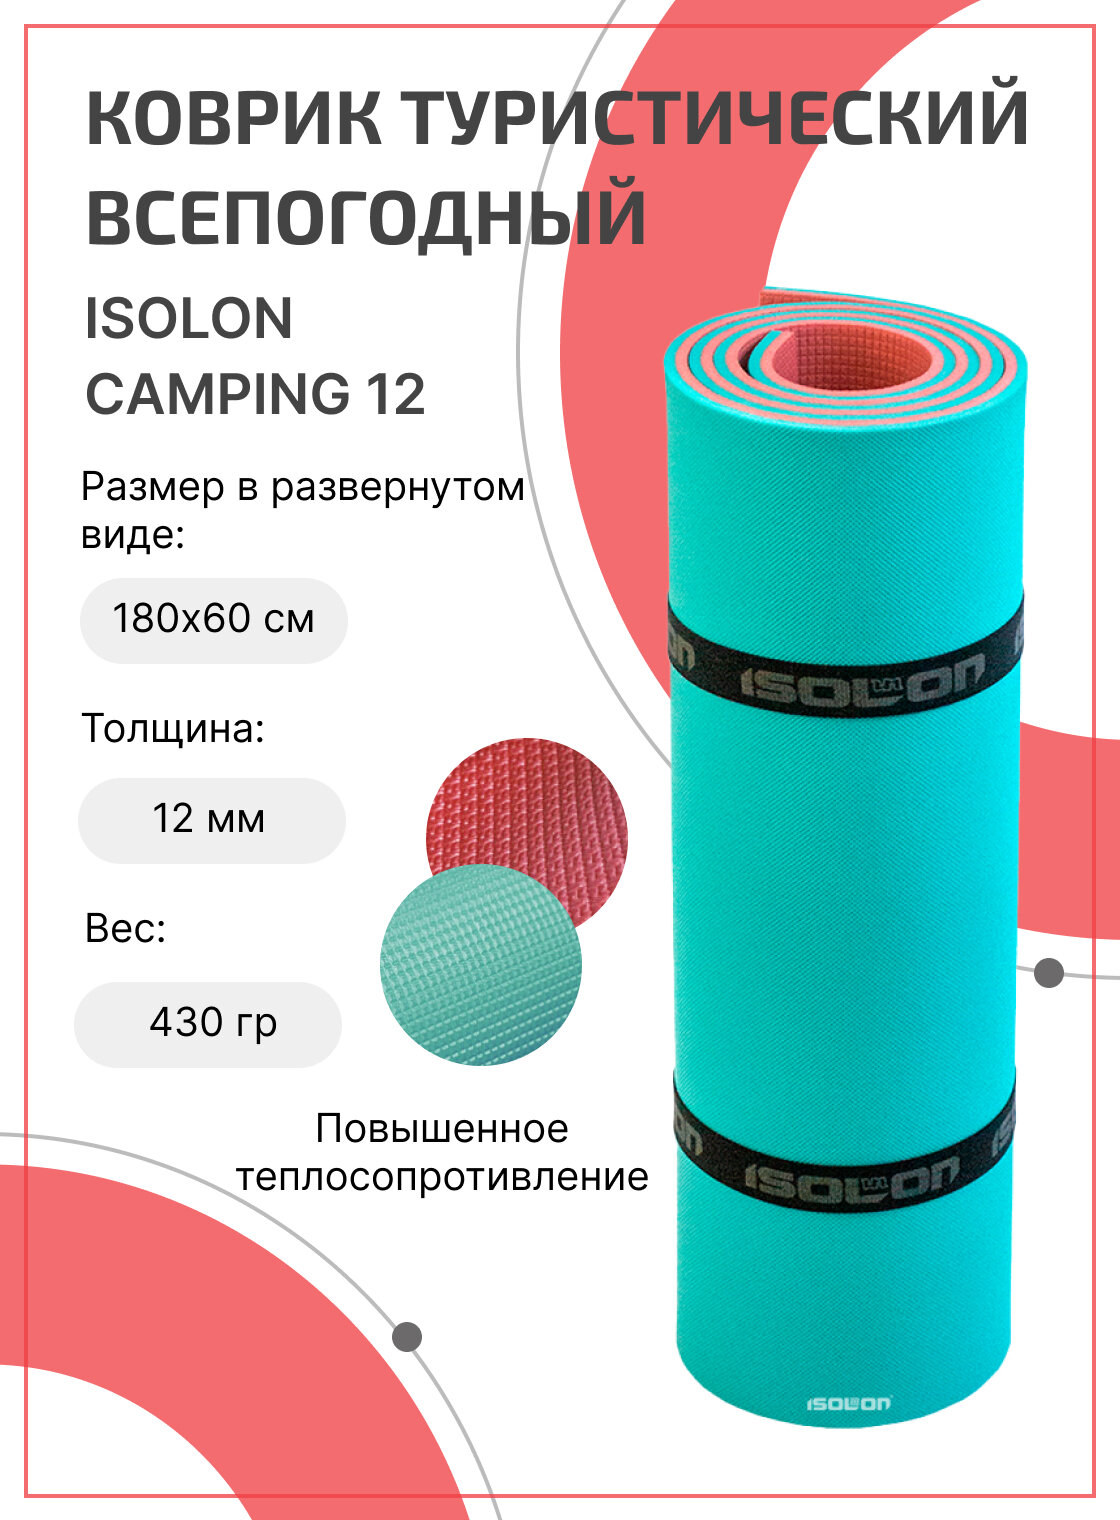 Коврик для активного отдыха и спорта Isolon Camping 12 мм, 180х60 см бирюзовый/бордо